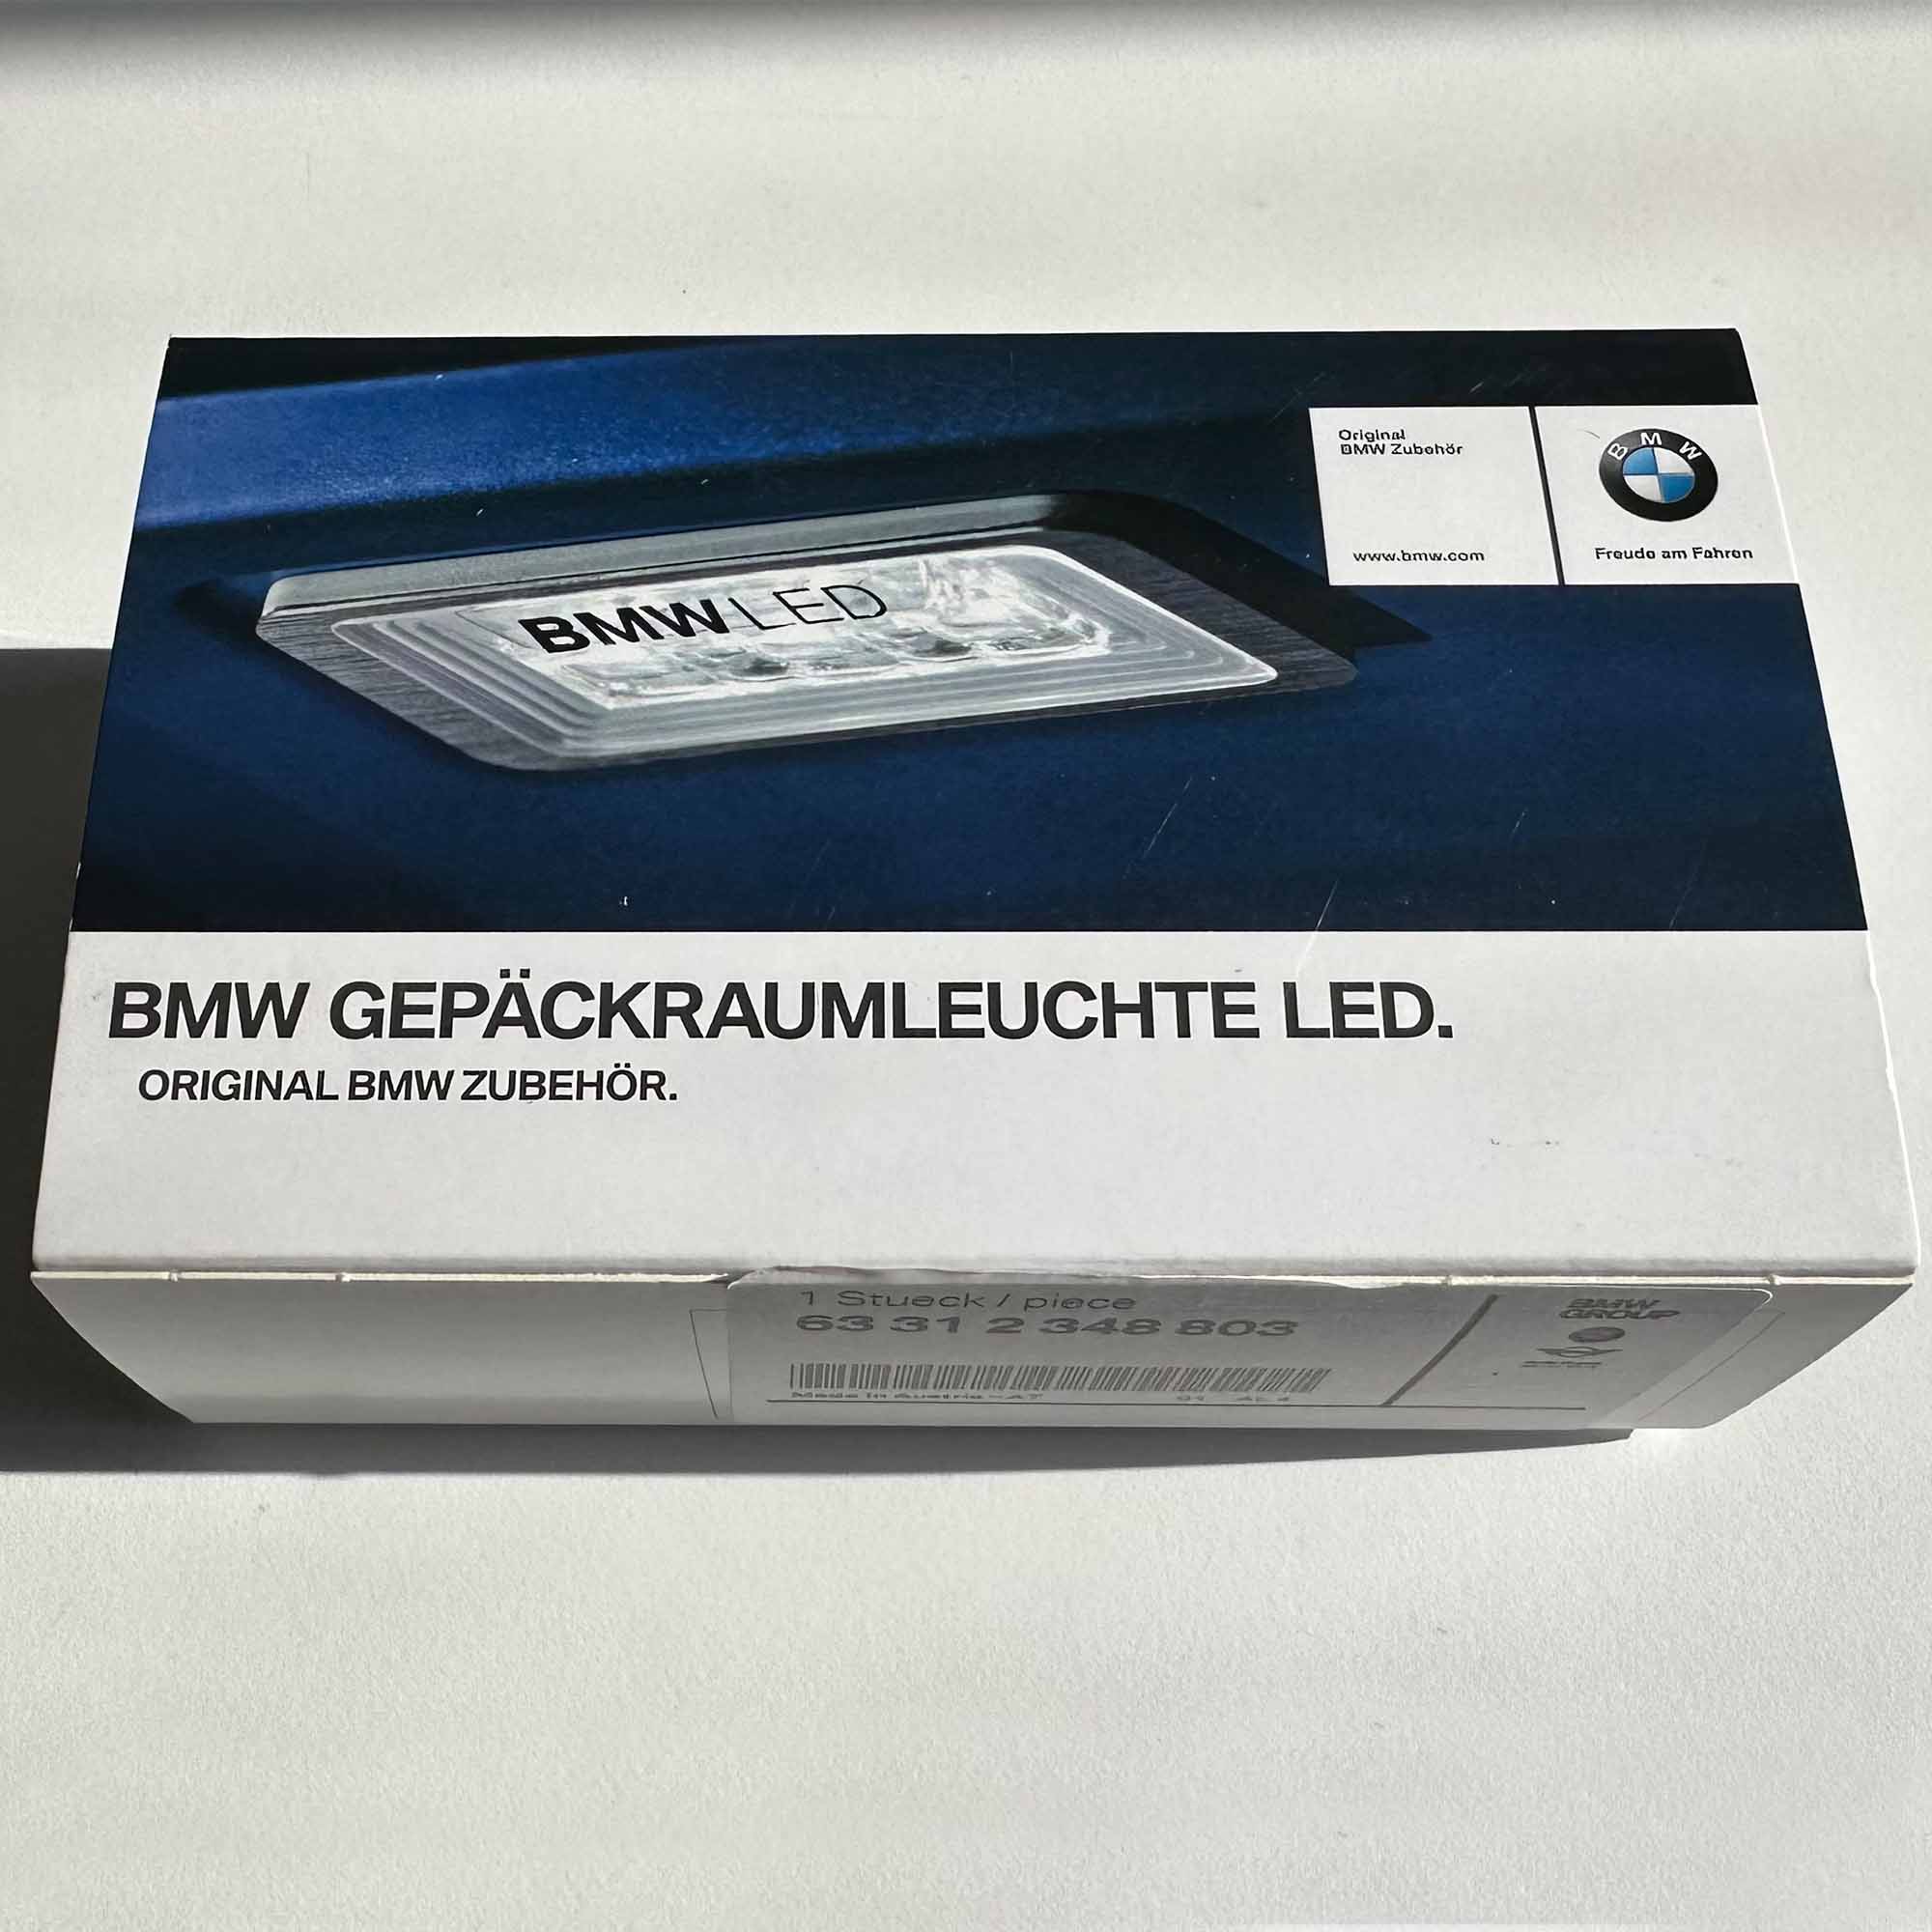 BMW Dachrinnenleuchten BMW Gepäckraumleuchte LED Kofferraum Licht  Innenleuchte